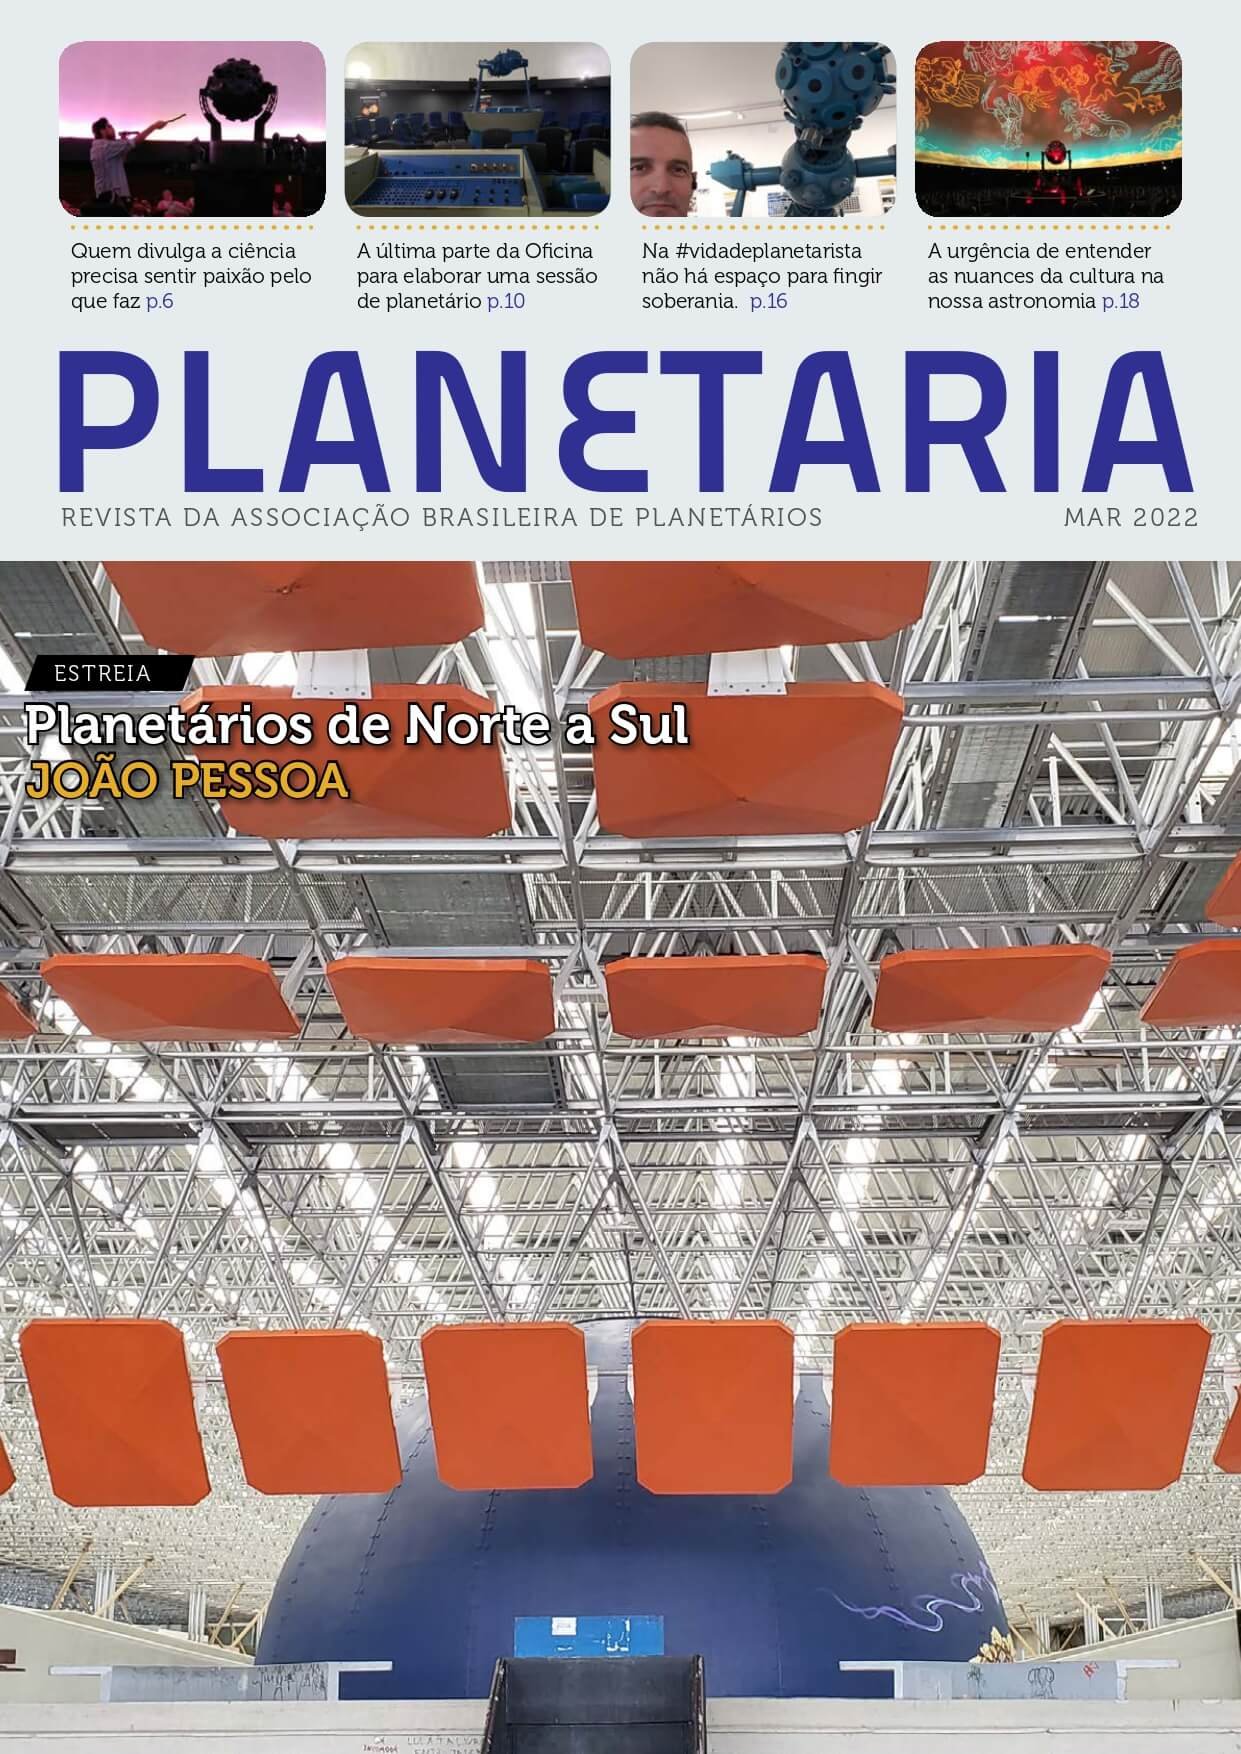 Planetaria N°32